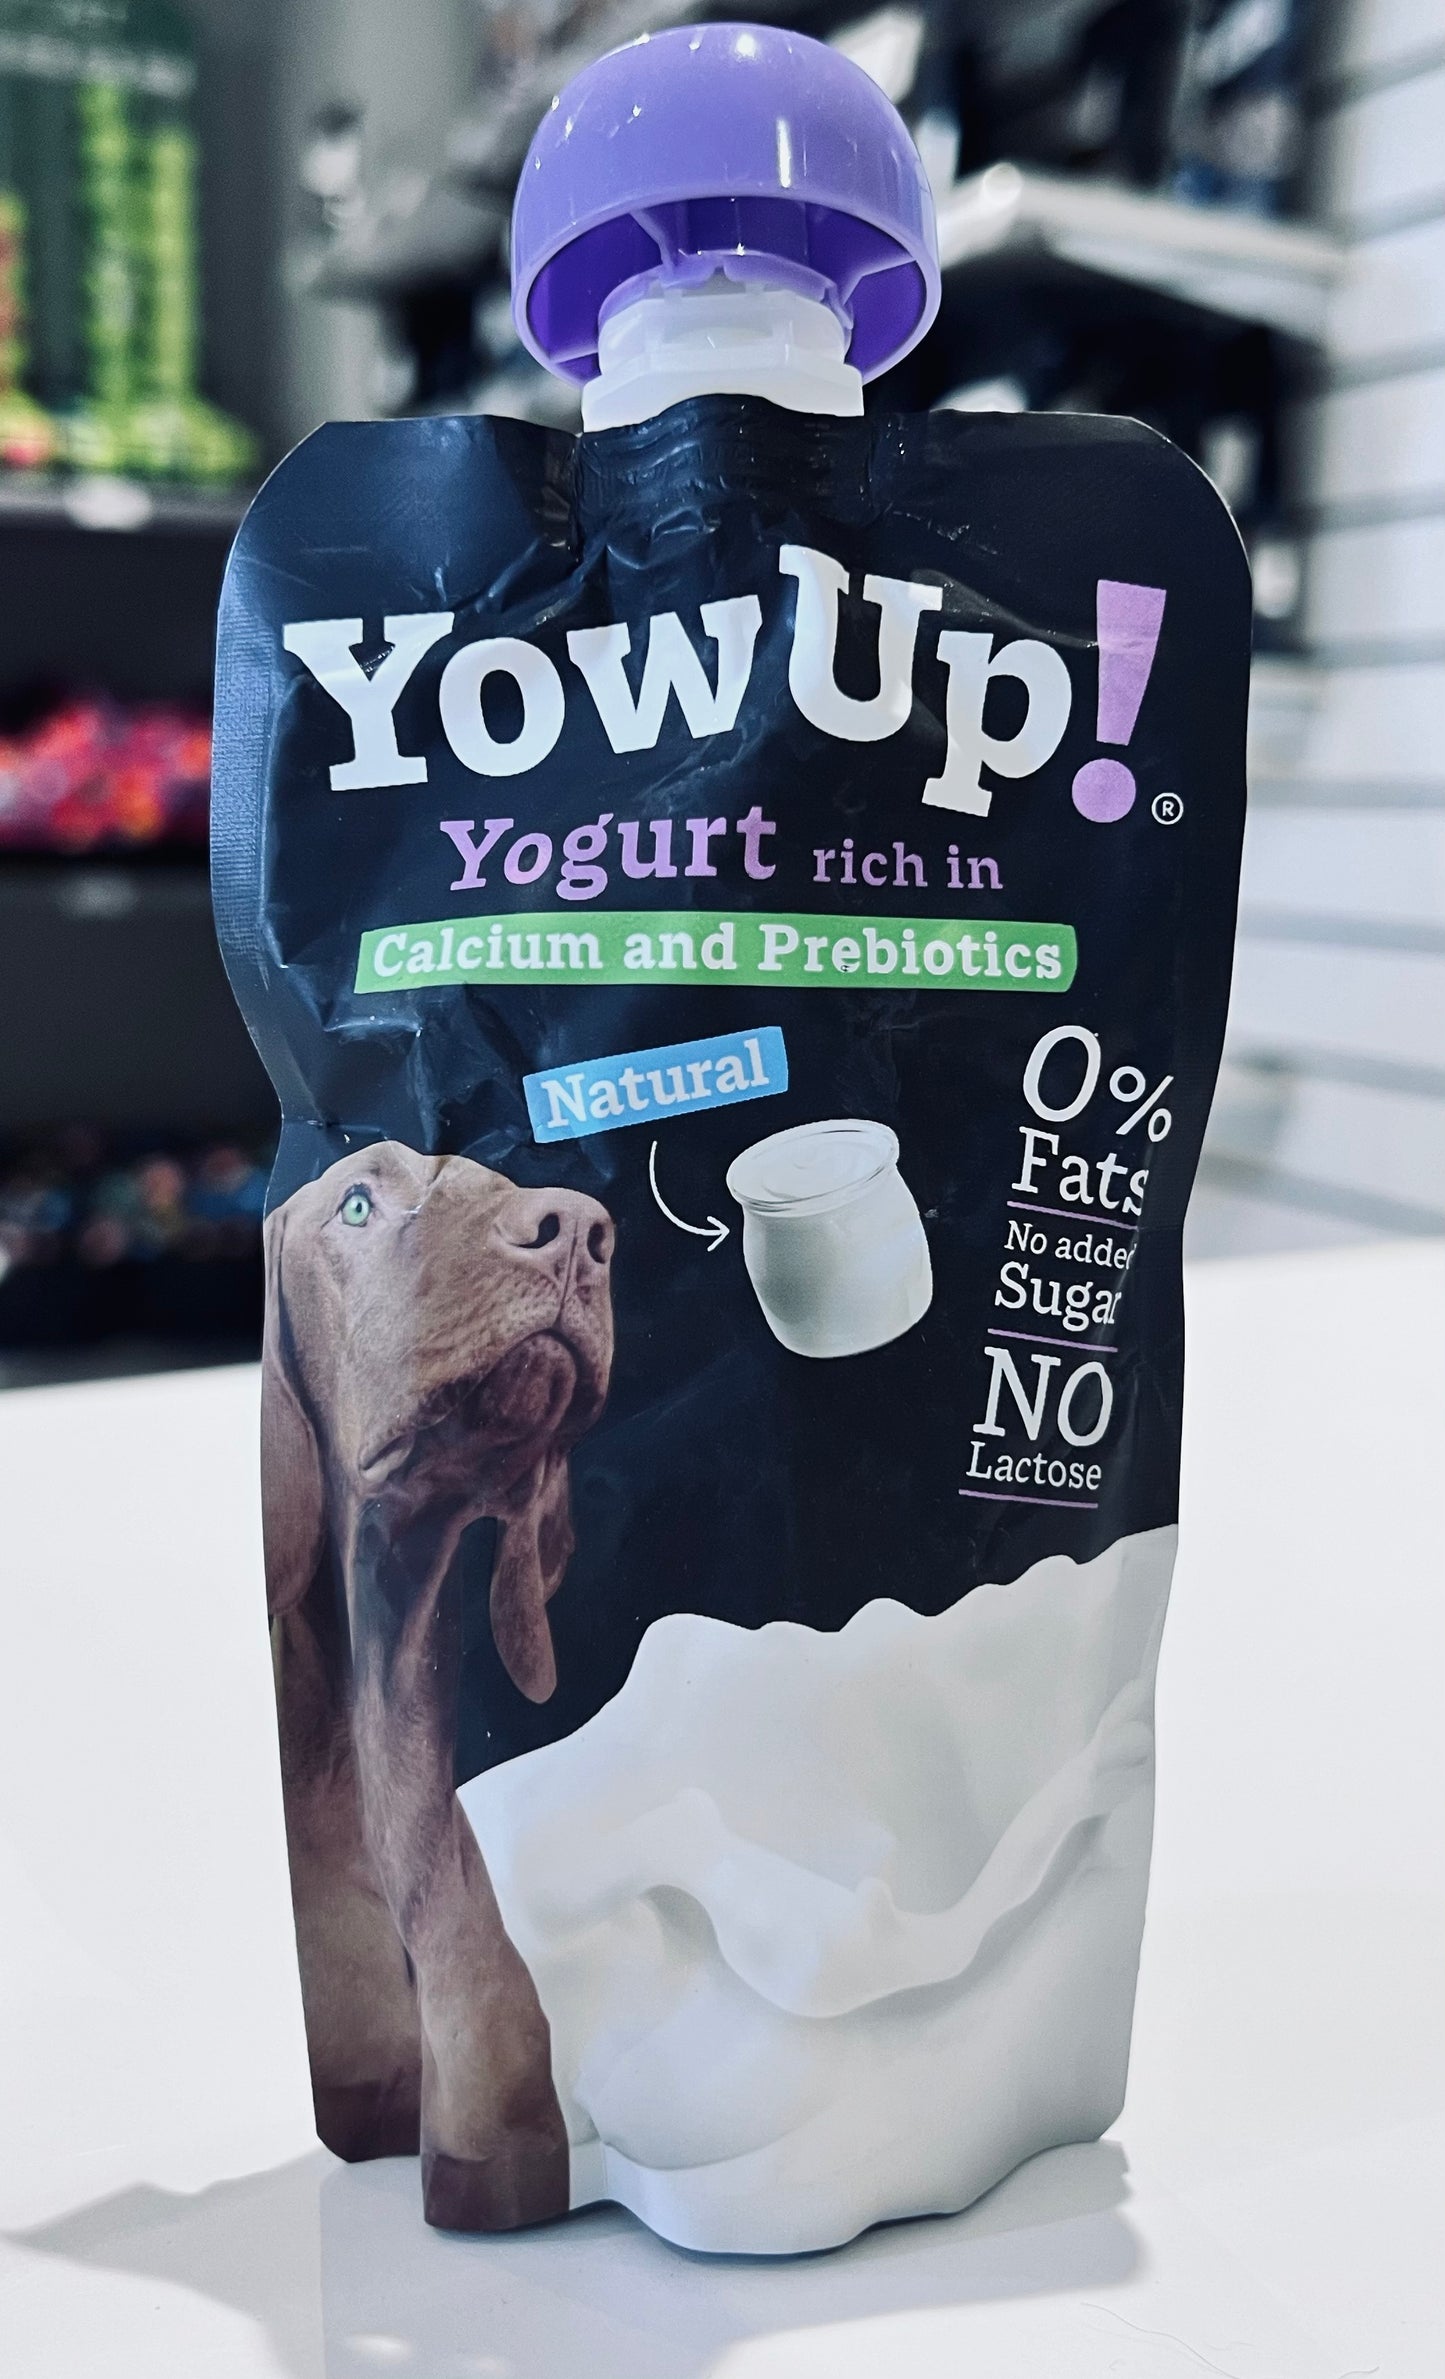 Yowup! Yogurt - Natural